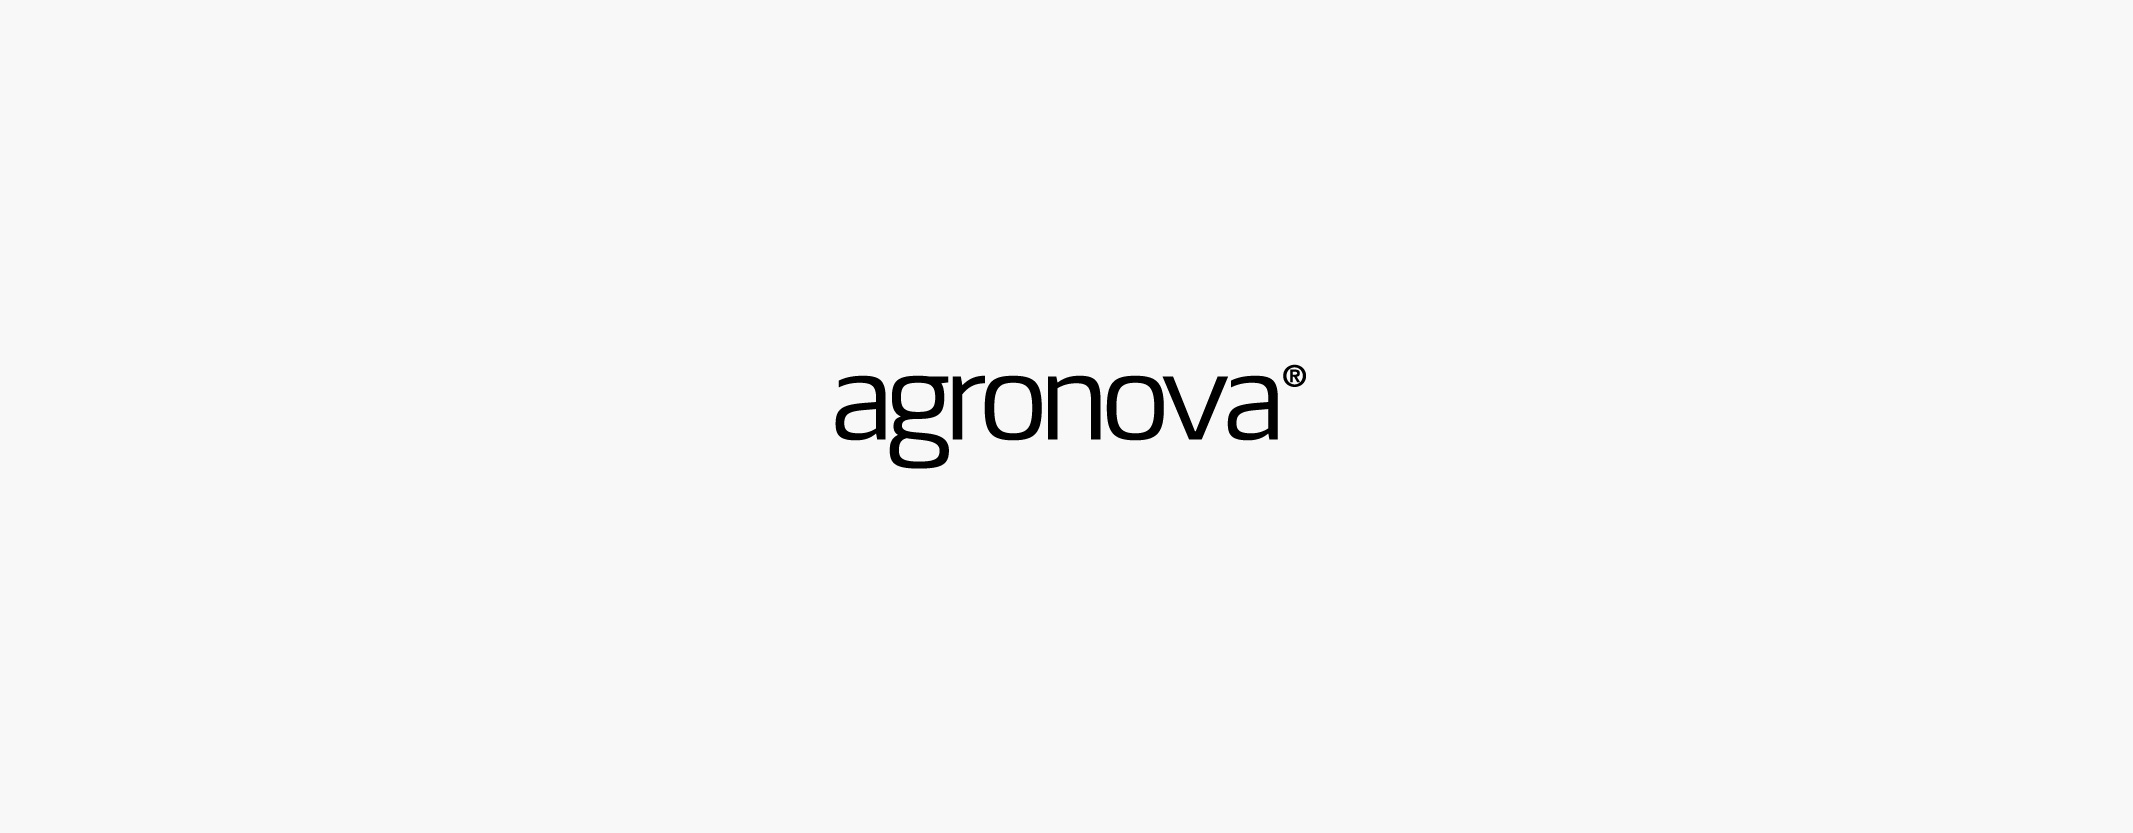 30_logos_agronova